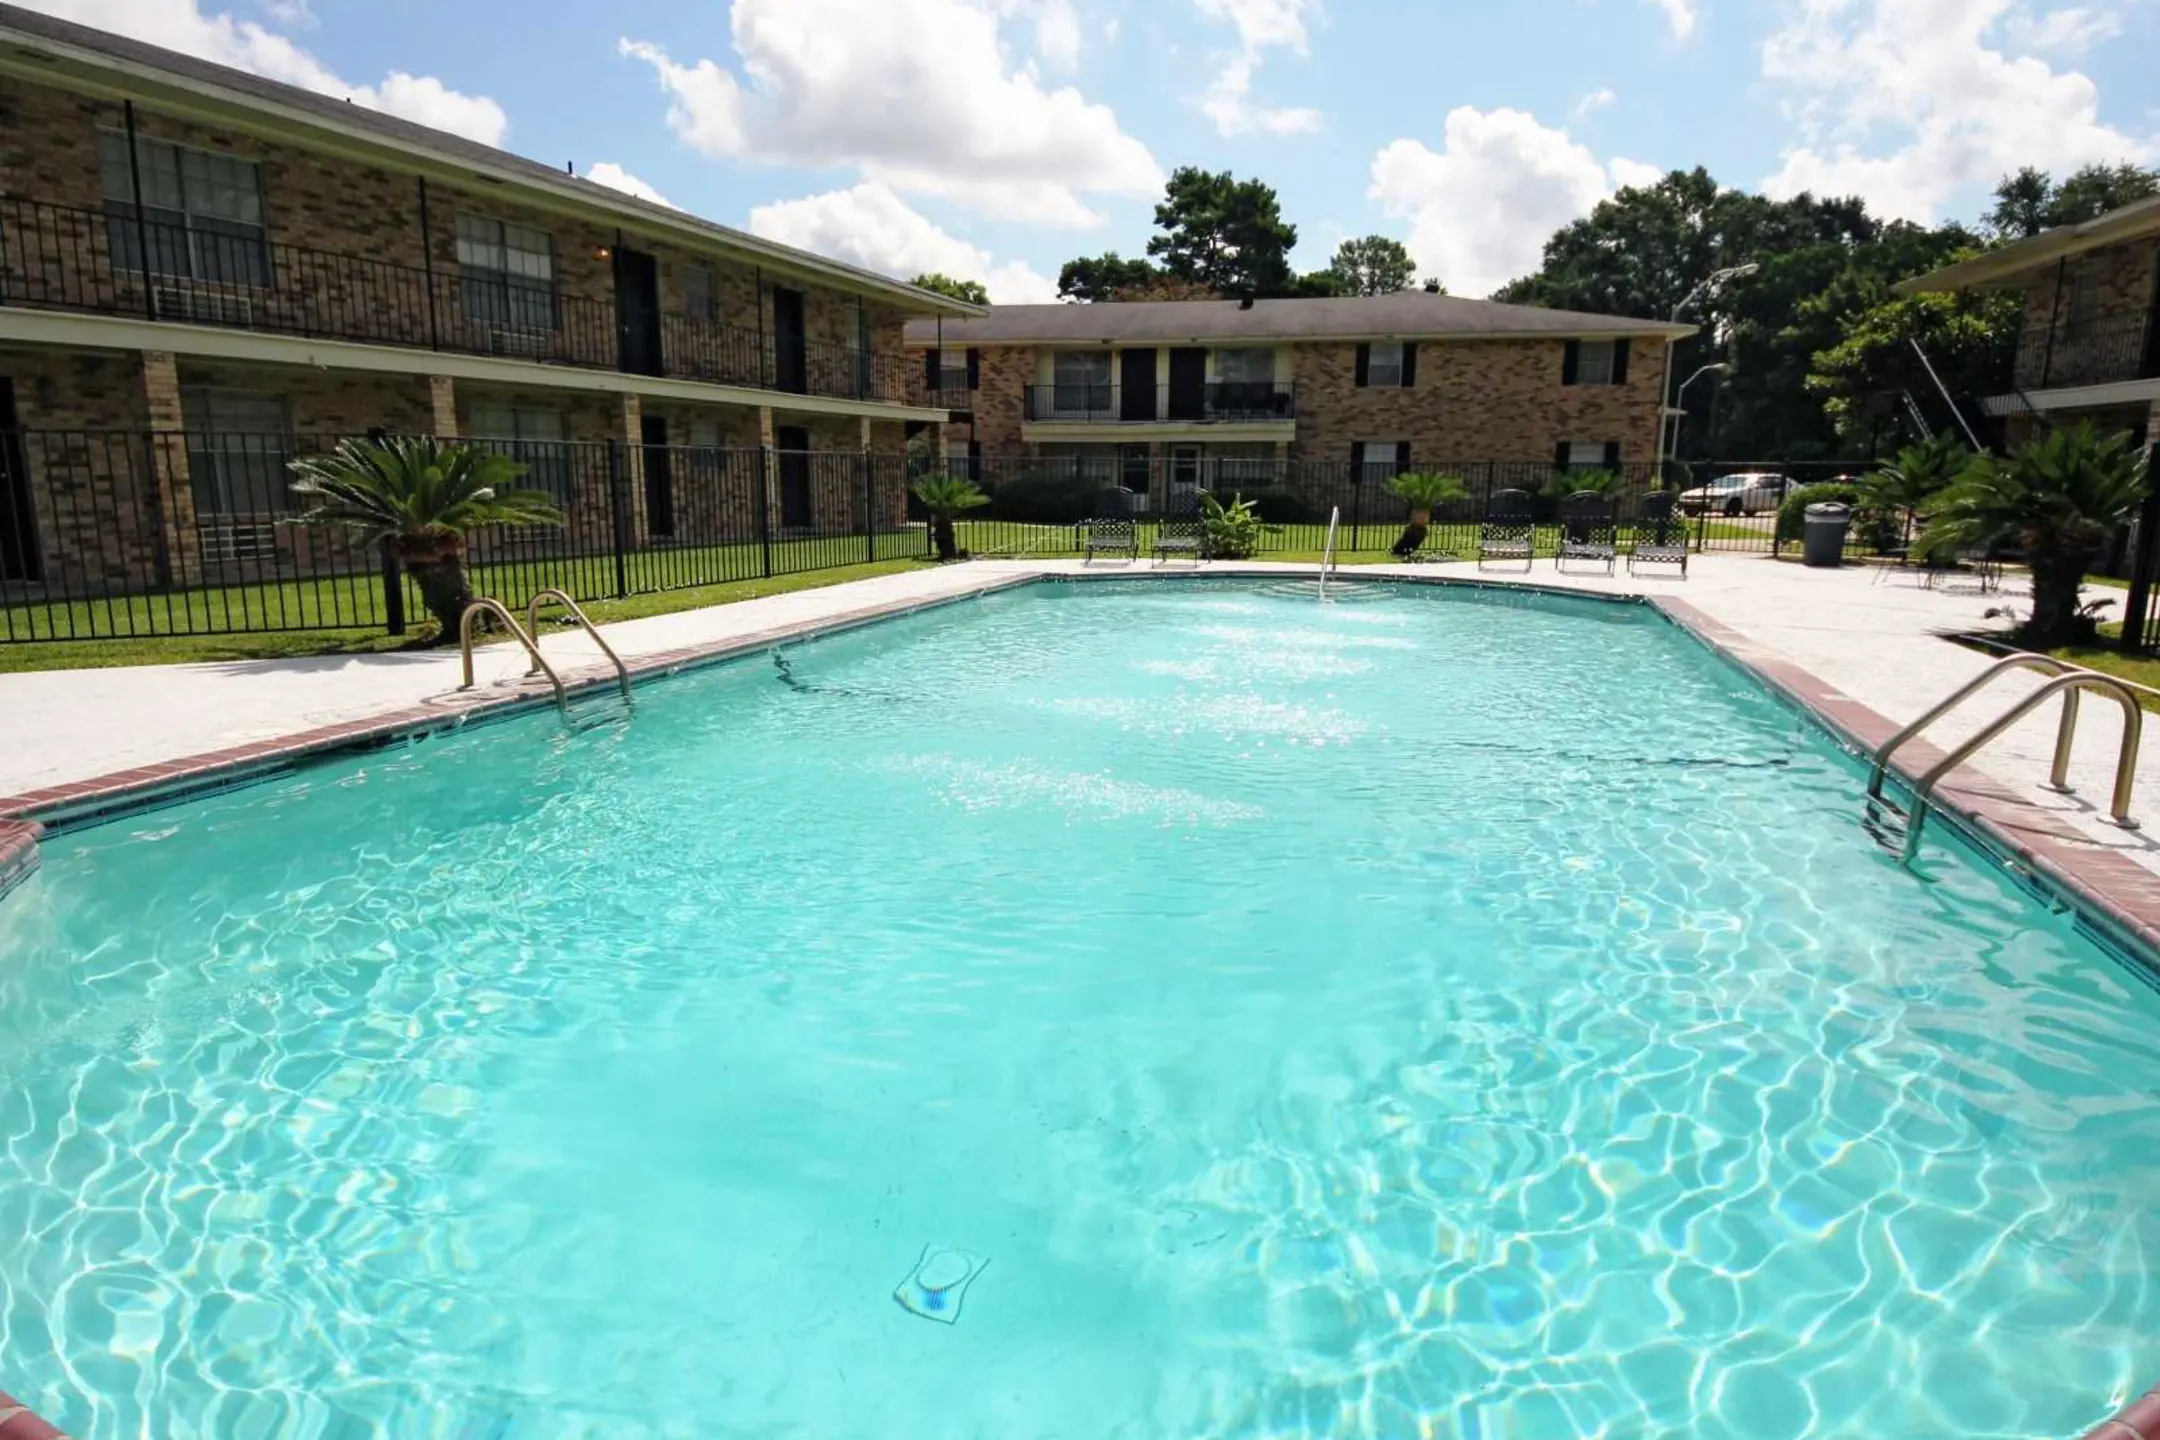 Pool - Park Regency Apartments - Baton Rouge, LA